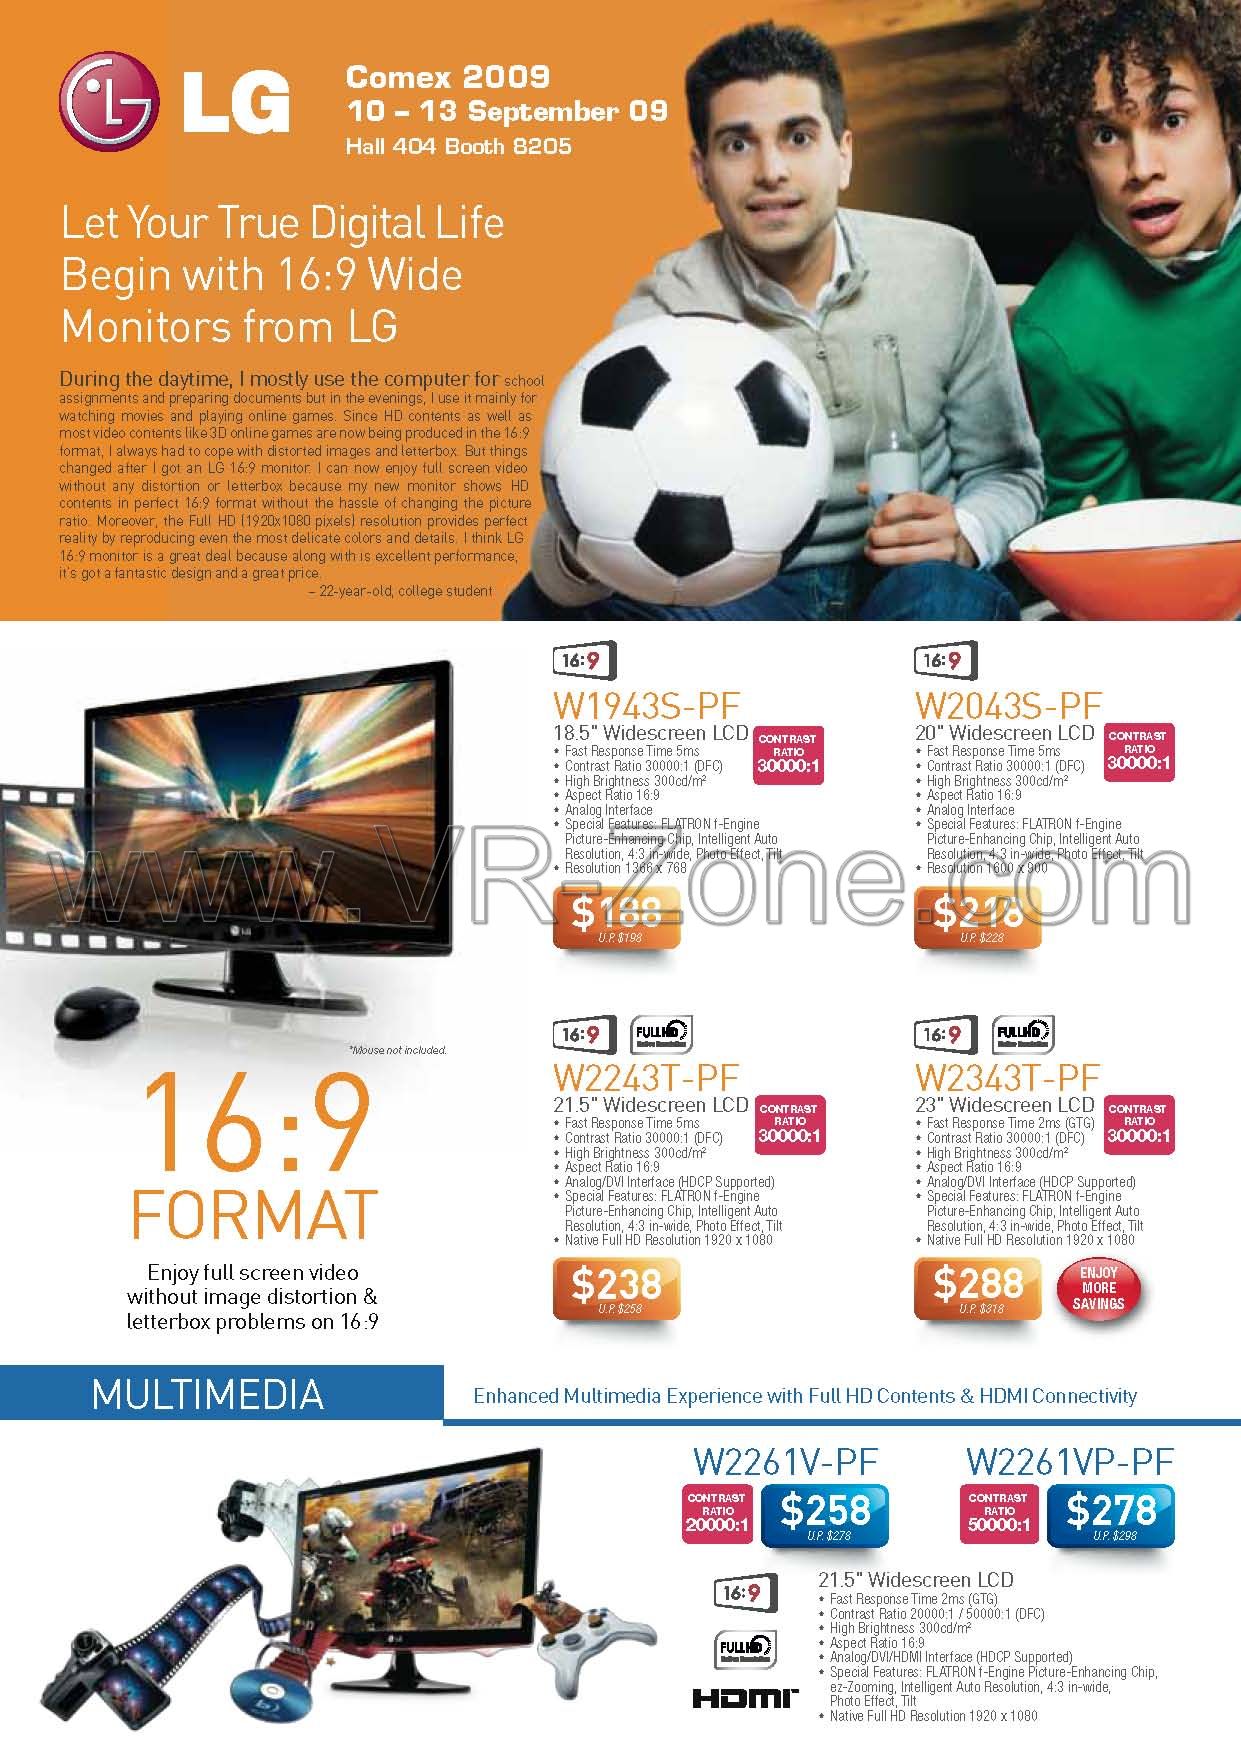 Comex 2009 price list image brochure of LG LCD Monitors W1943S W2043S W2243T W2343T W2261V W2261VP